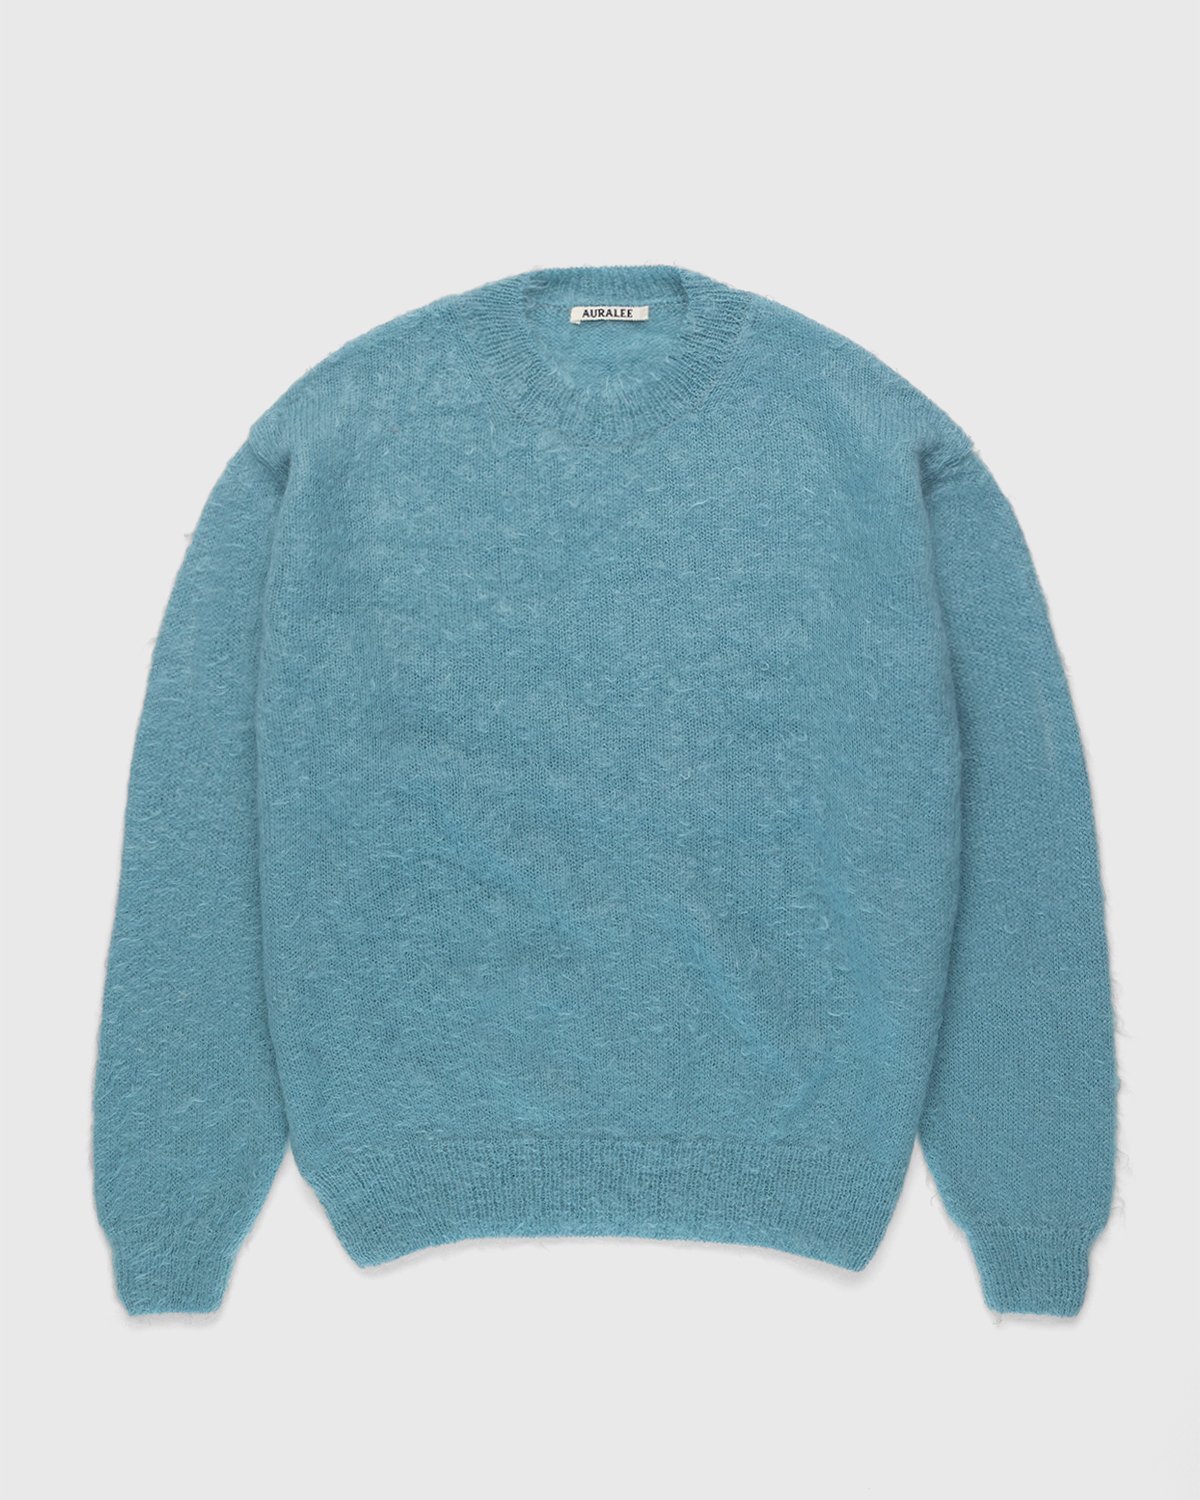 Auralee – Ultra-Soft Mohair Knit Blue | Highsnobiety Shop